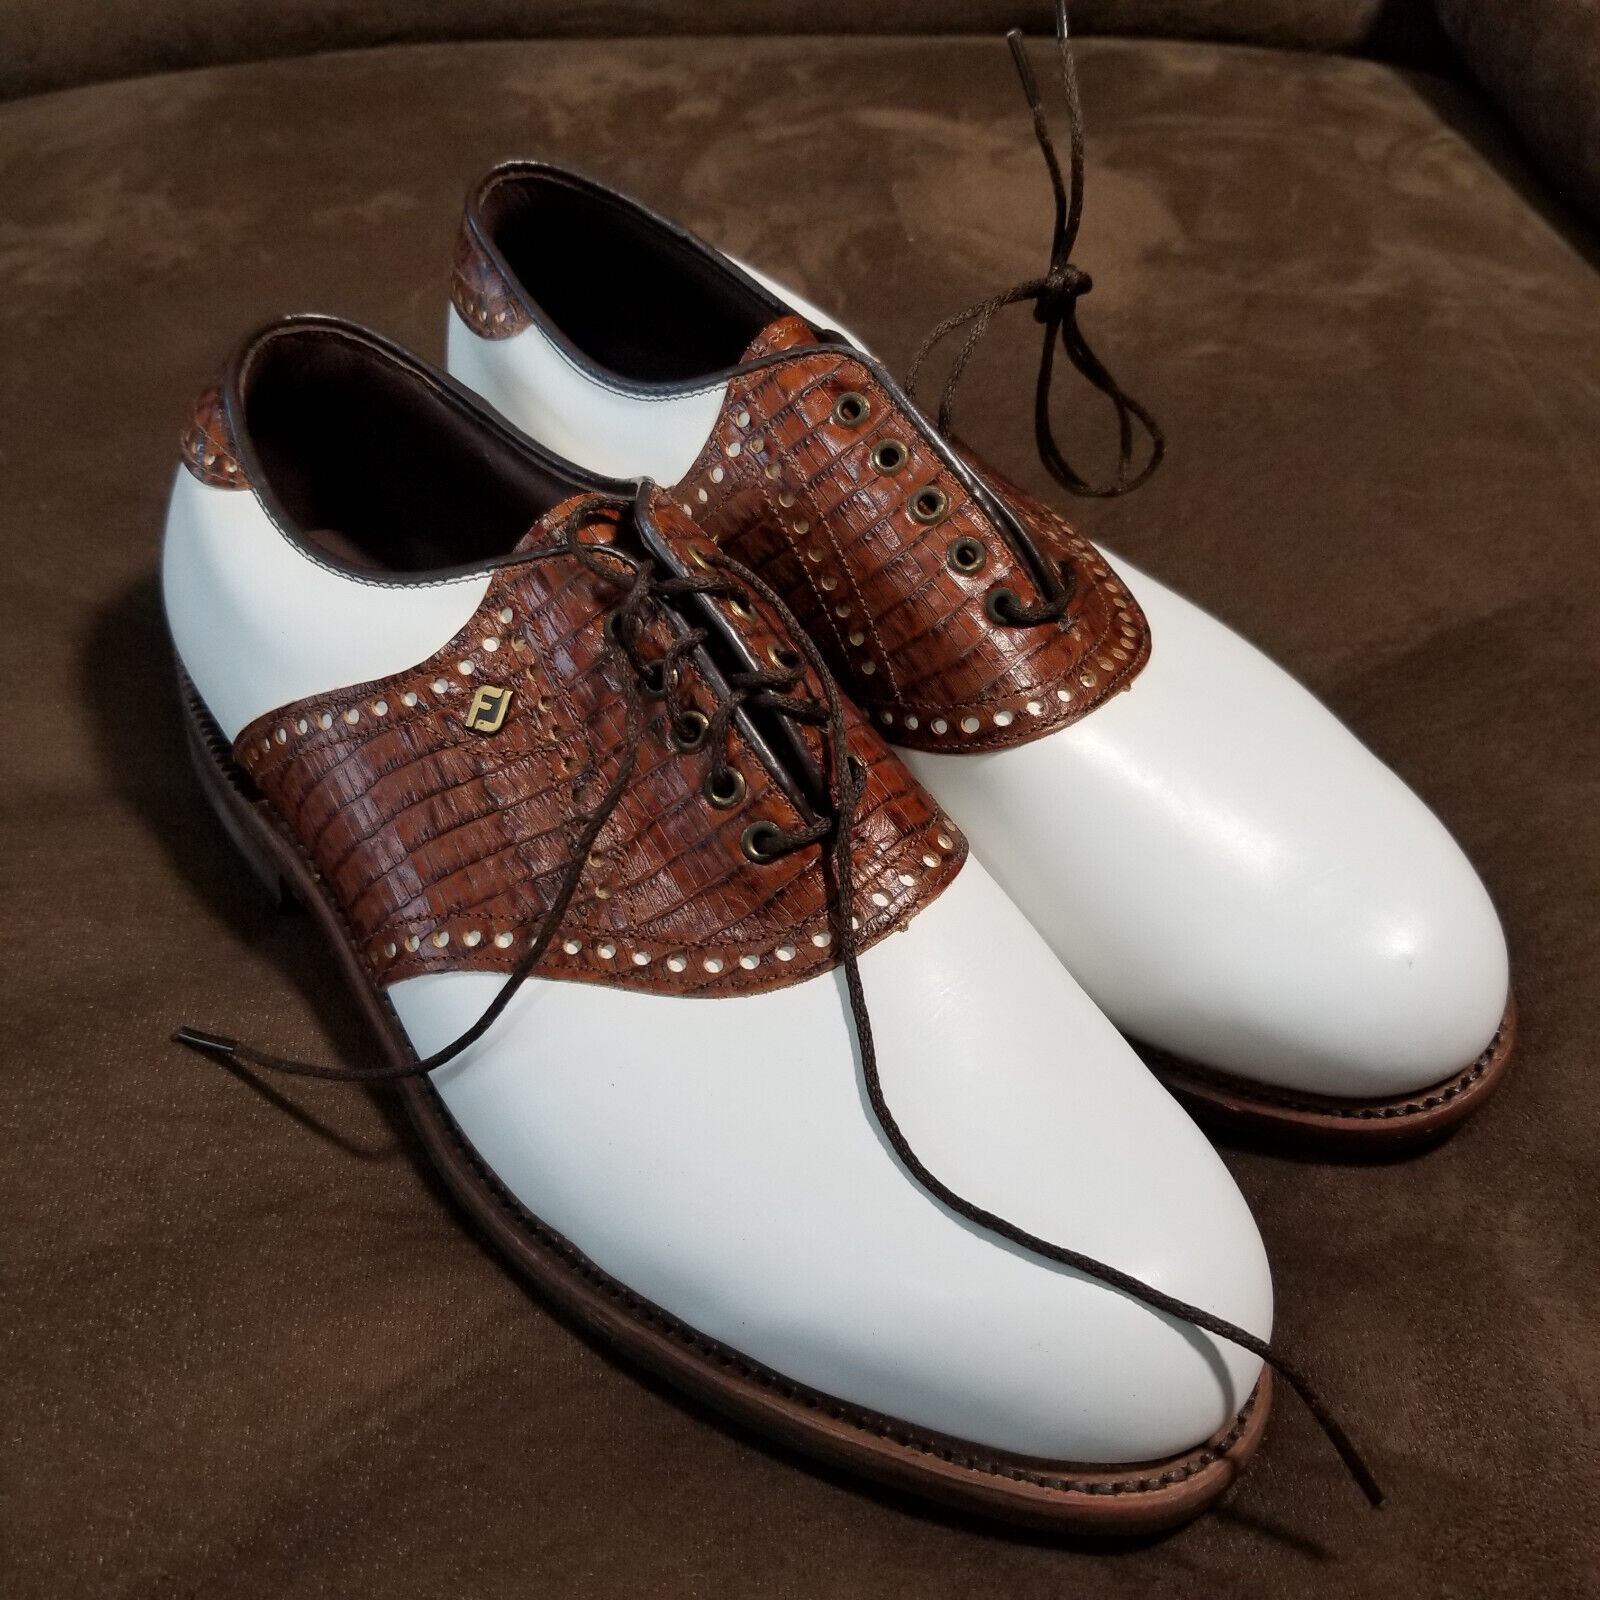 Footjoy Classics Dry Premiere Golf Shoes WH/BRN 50120 Lizard 9.5E excellent